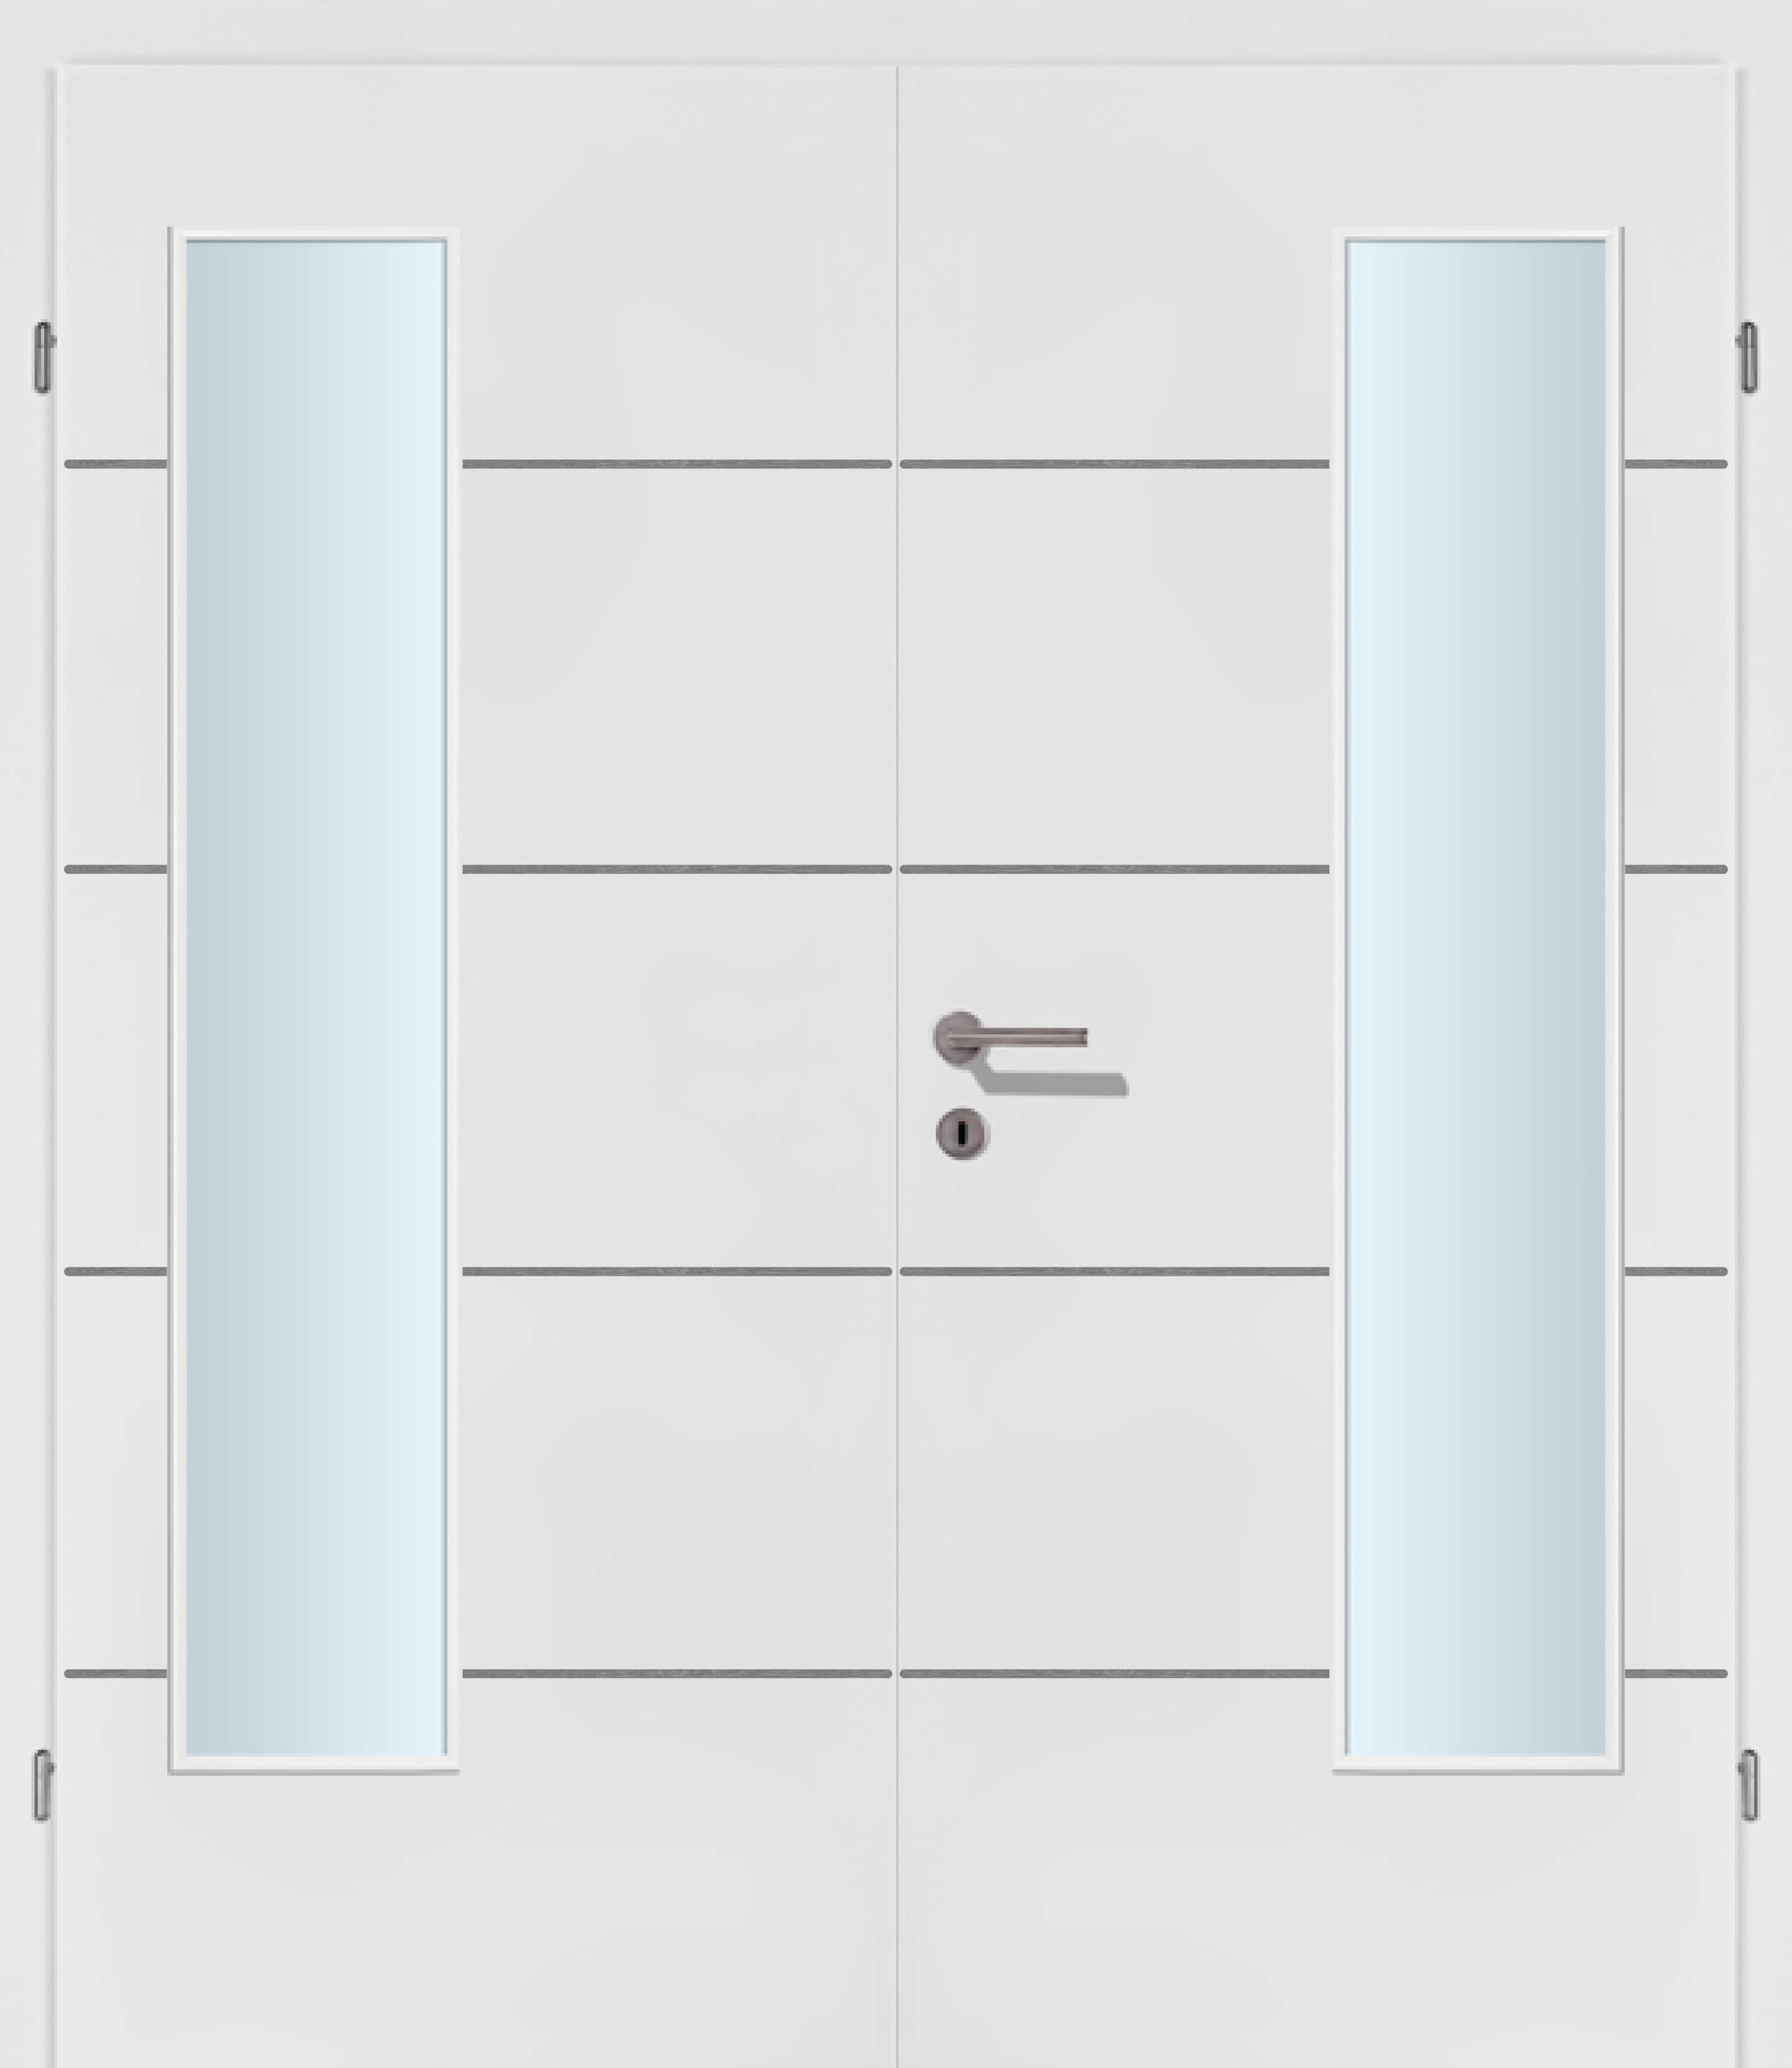 Selektion T39 Alu Effekt Lisenen weiss Innentür Inkl. Zarge (Türrahmen) Doppeltüre Inkl. Glaslichte EN Bandseitig